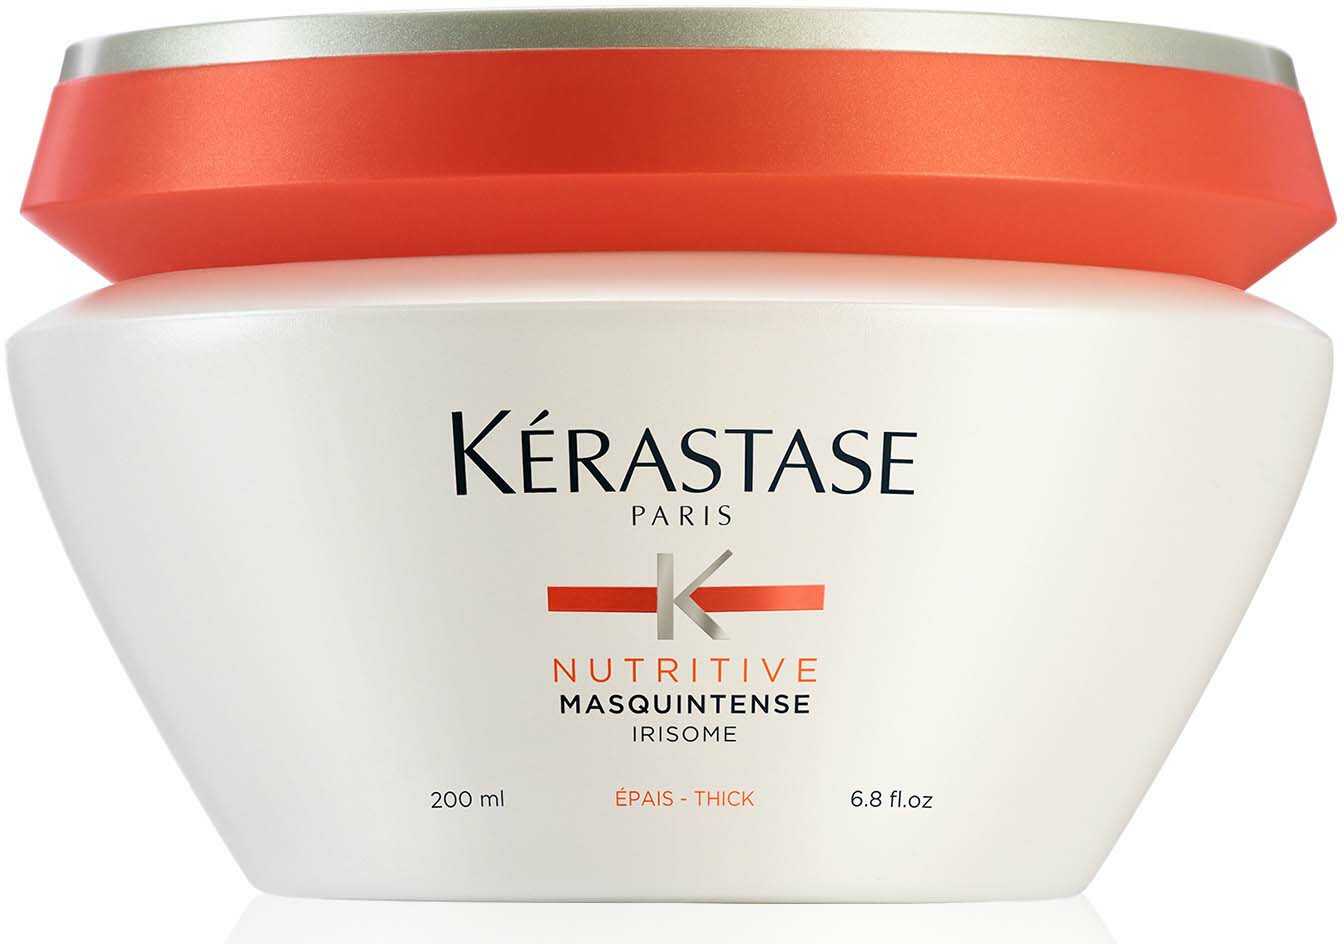 Kerastase Nutritive Irisome Masquintense Maska do włosów grubych, 200ml